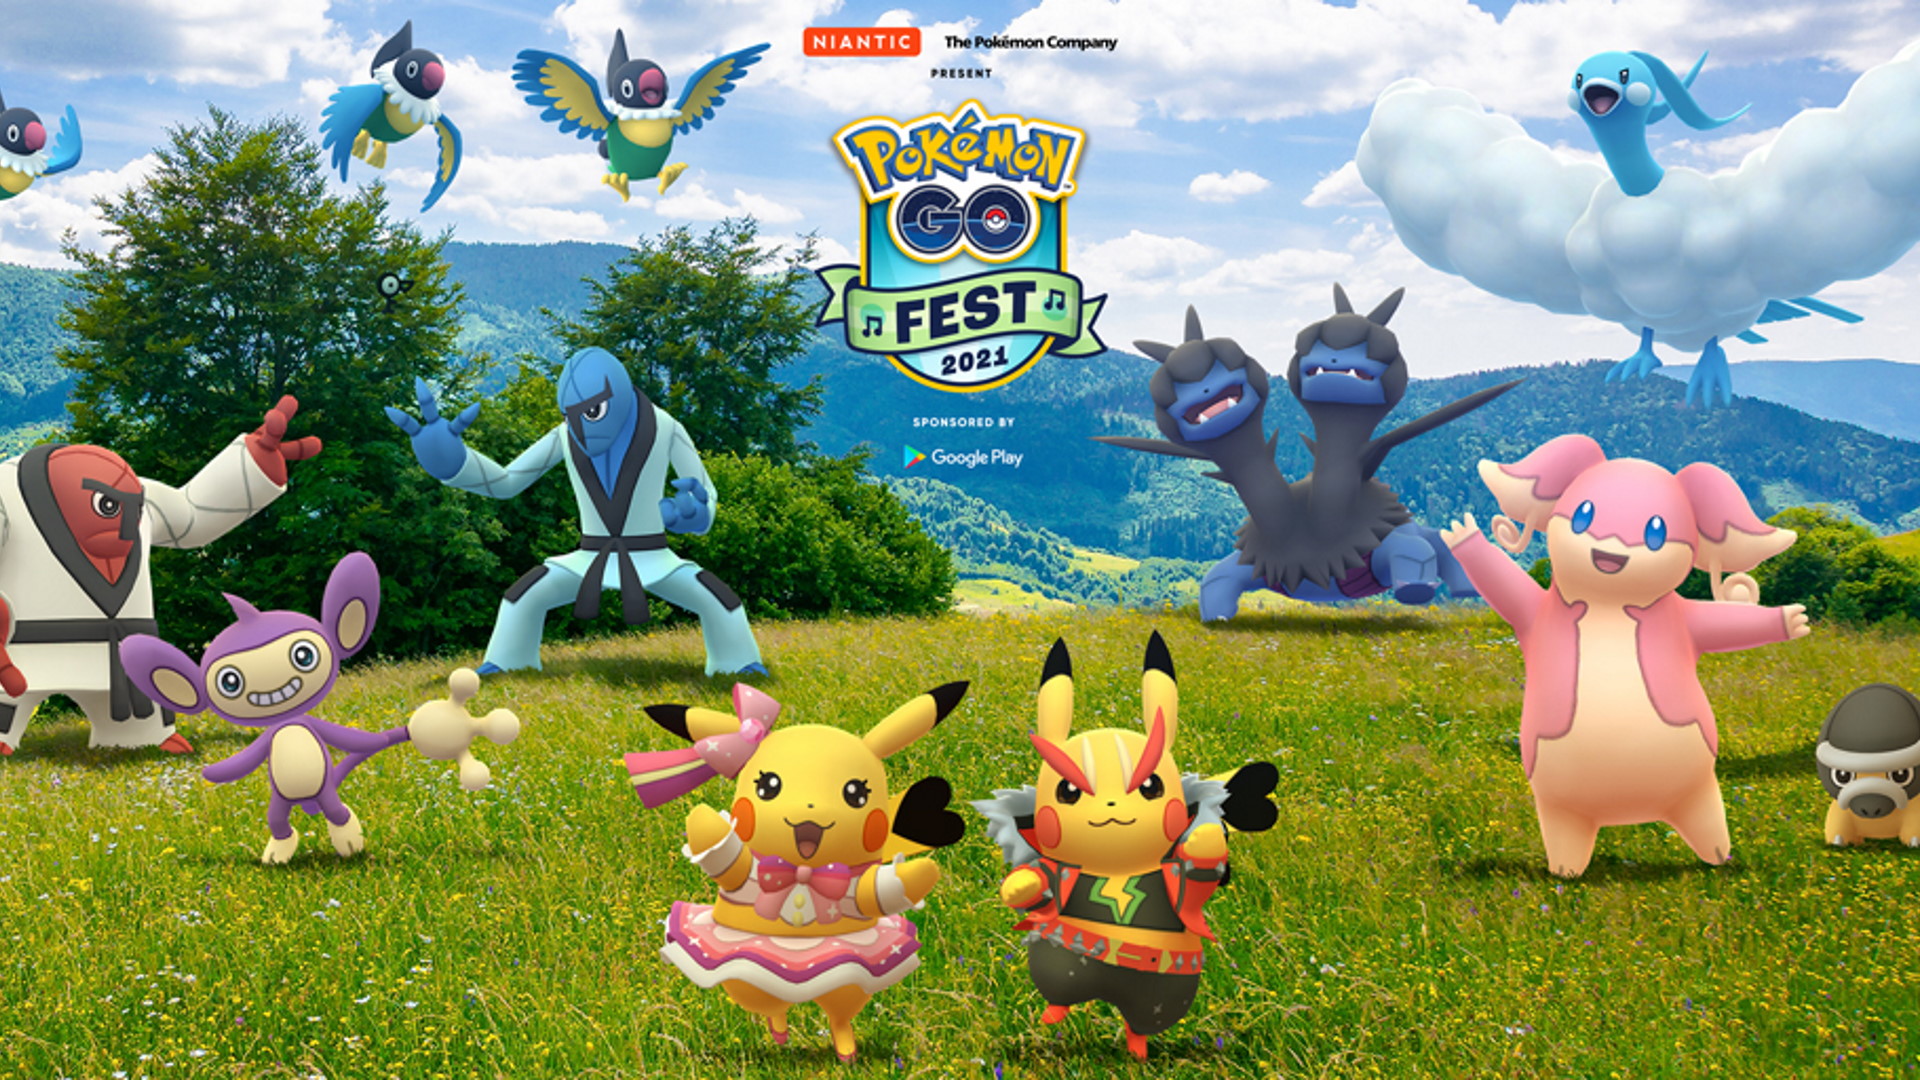 Pokemon Go Try Guys collaboration announced for Go Fest 2021 GamesRadar+